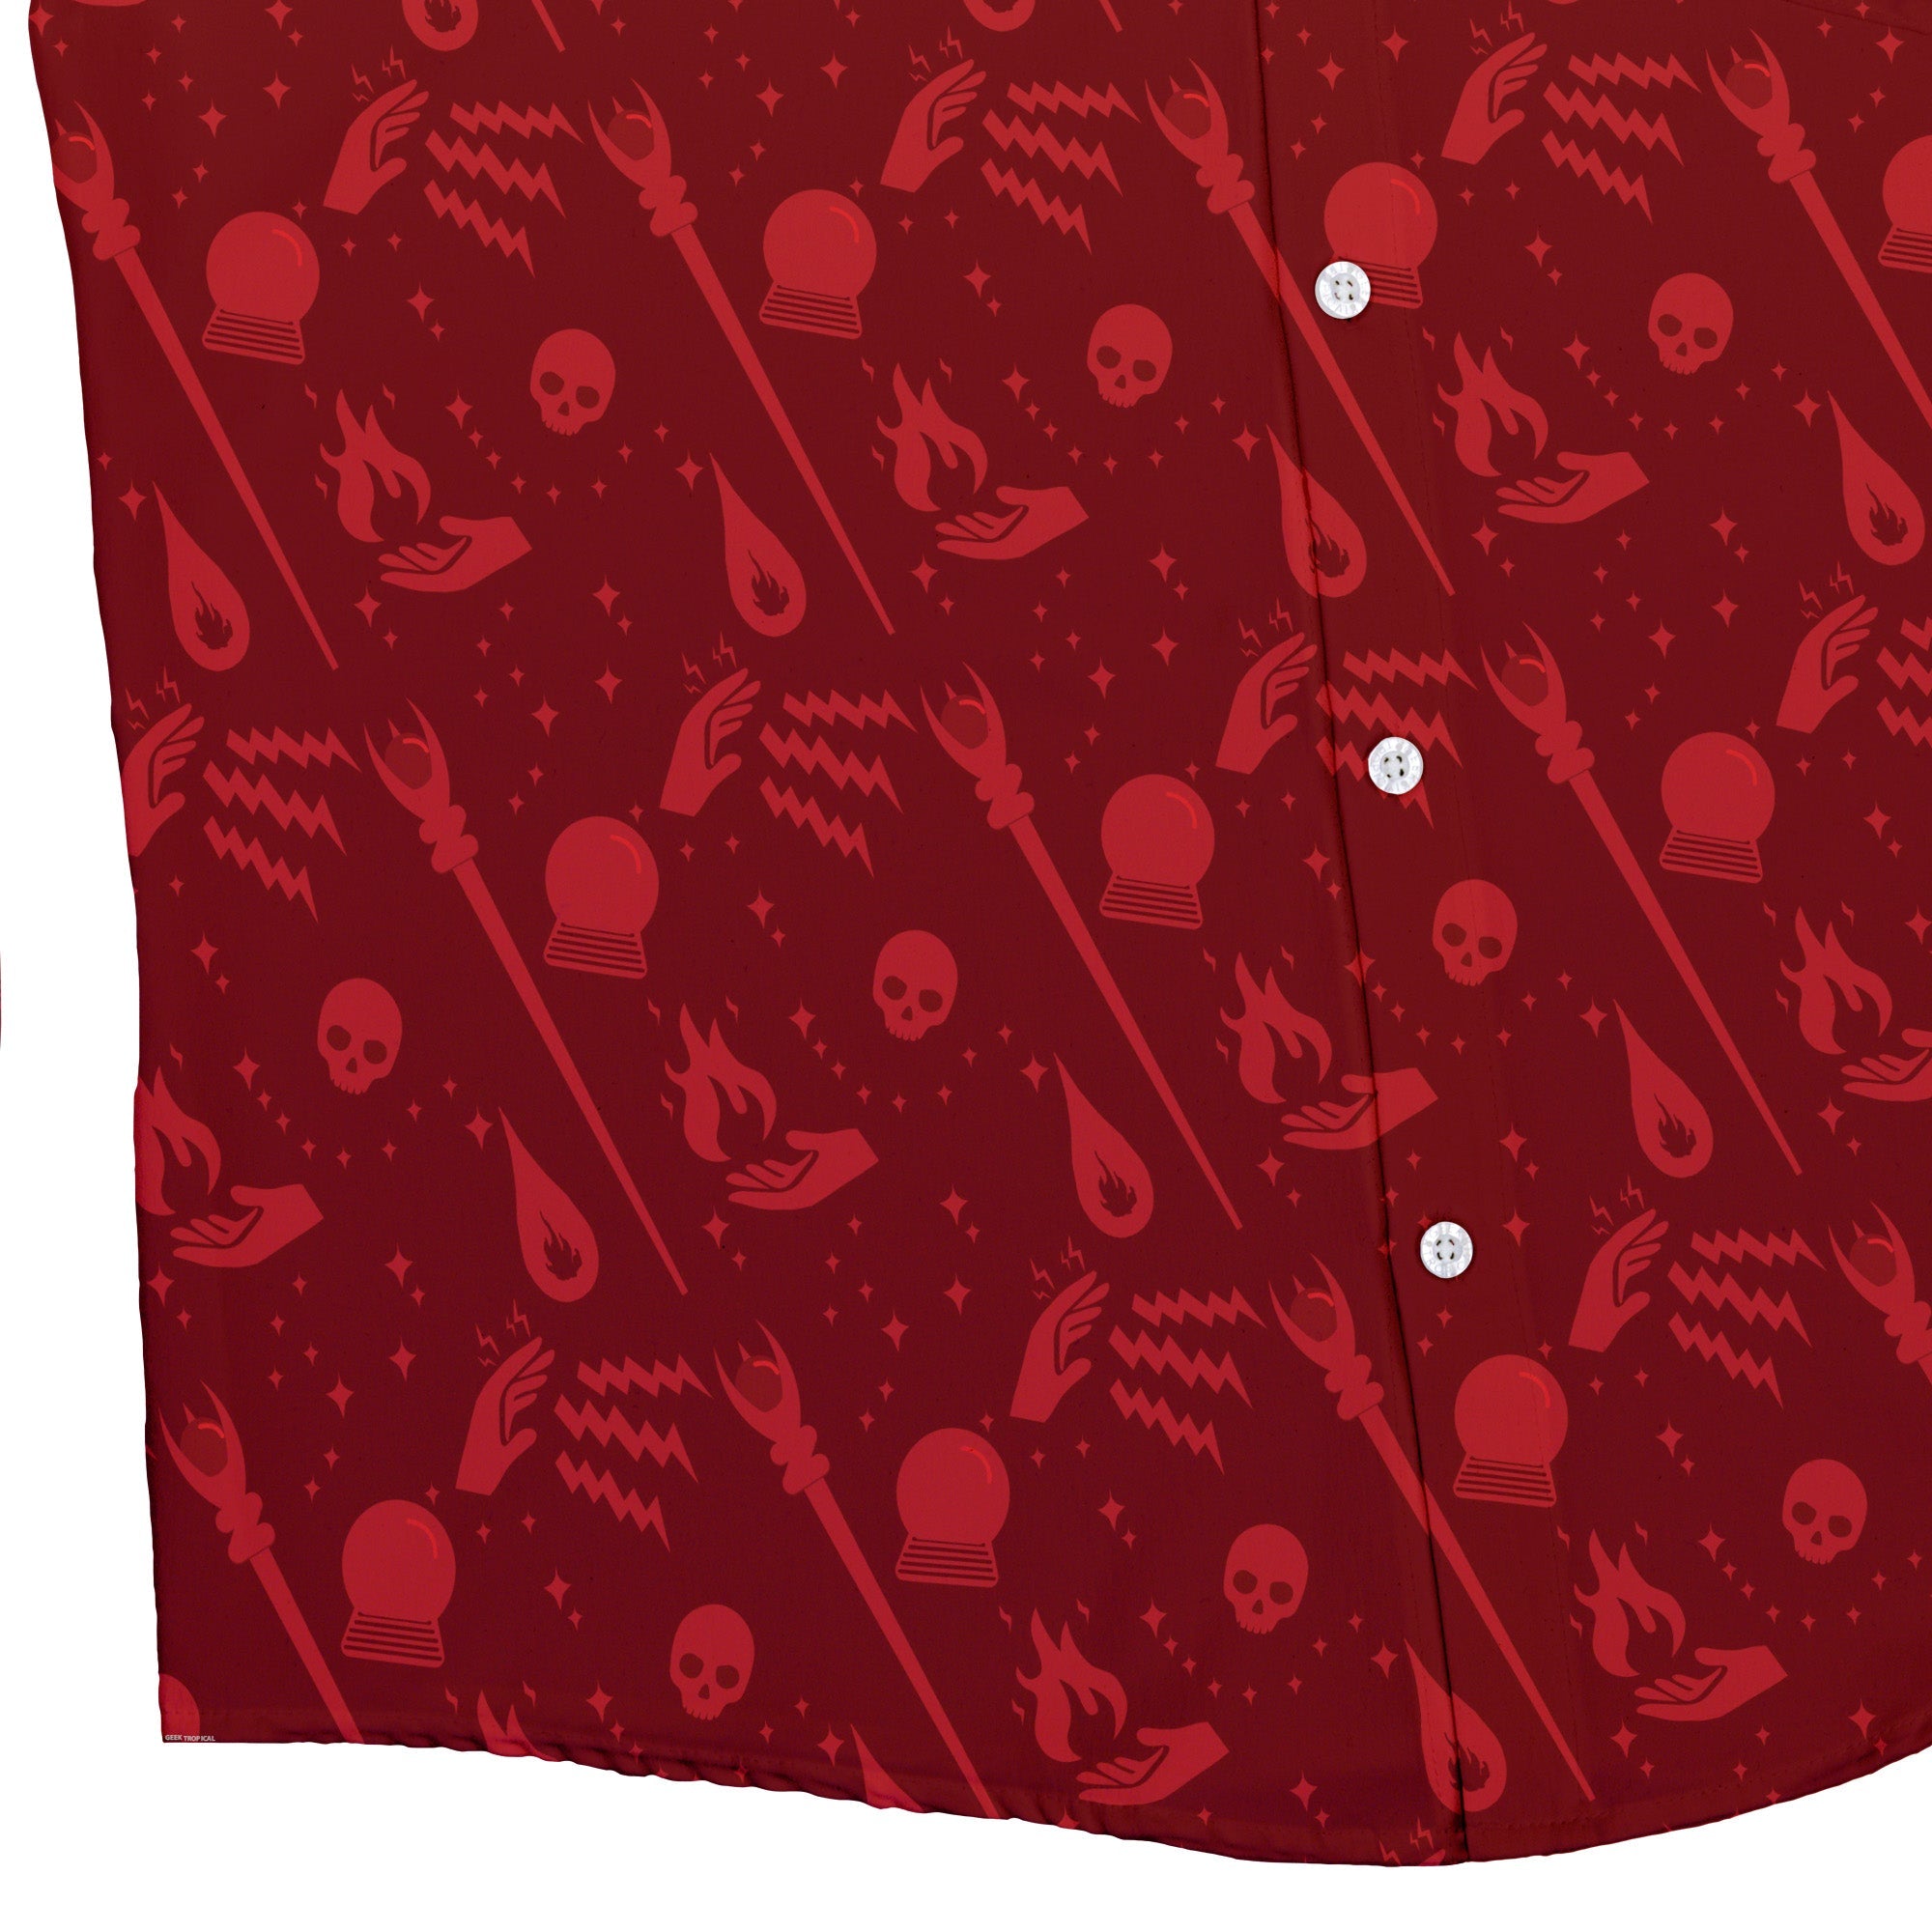 Dnd Sorcerer Class Button Up Shirt - adult sizing - Design by Heather Davenport - dnd & rpg print